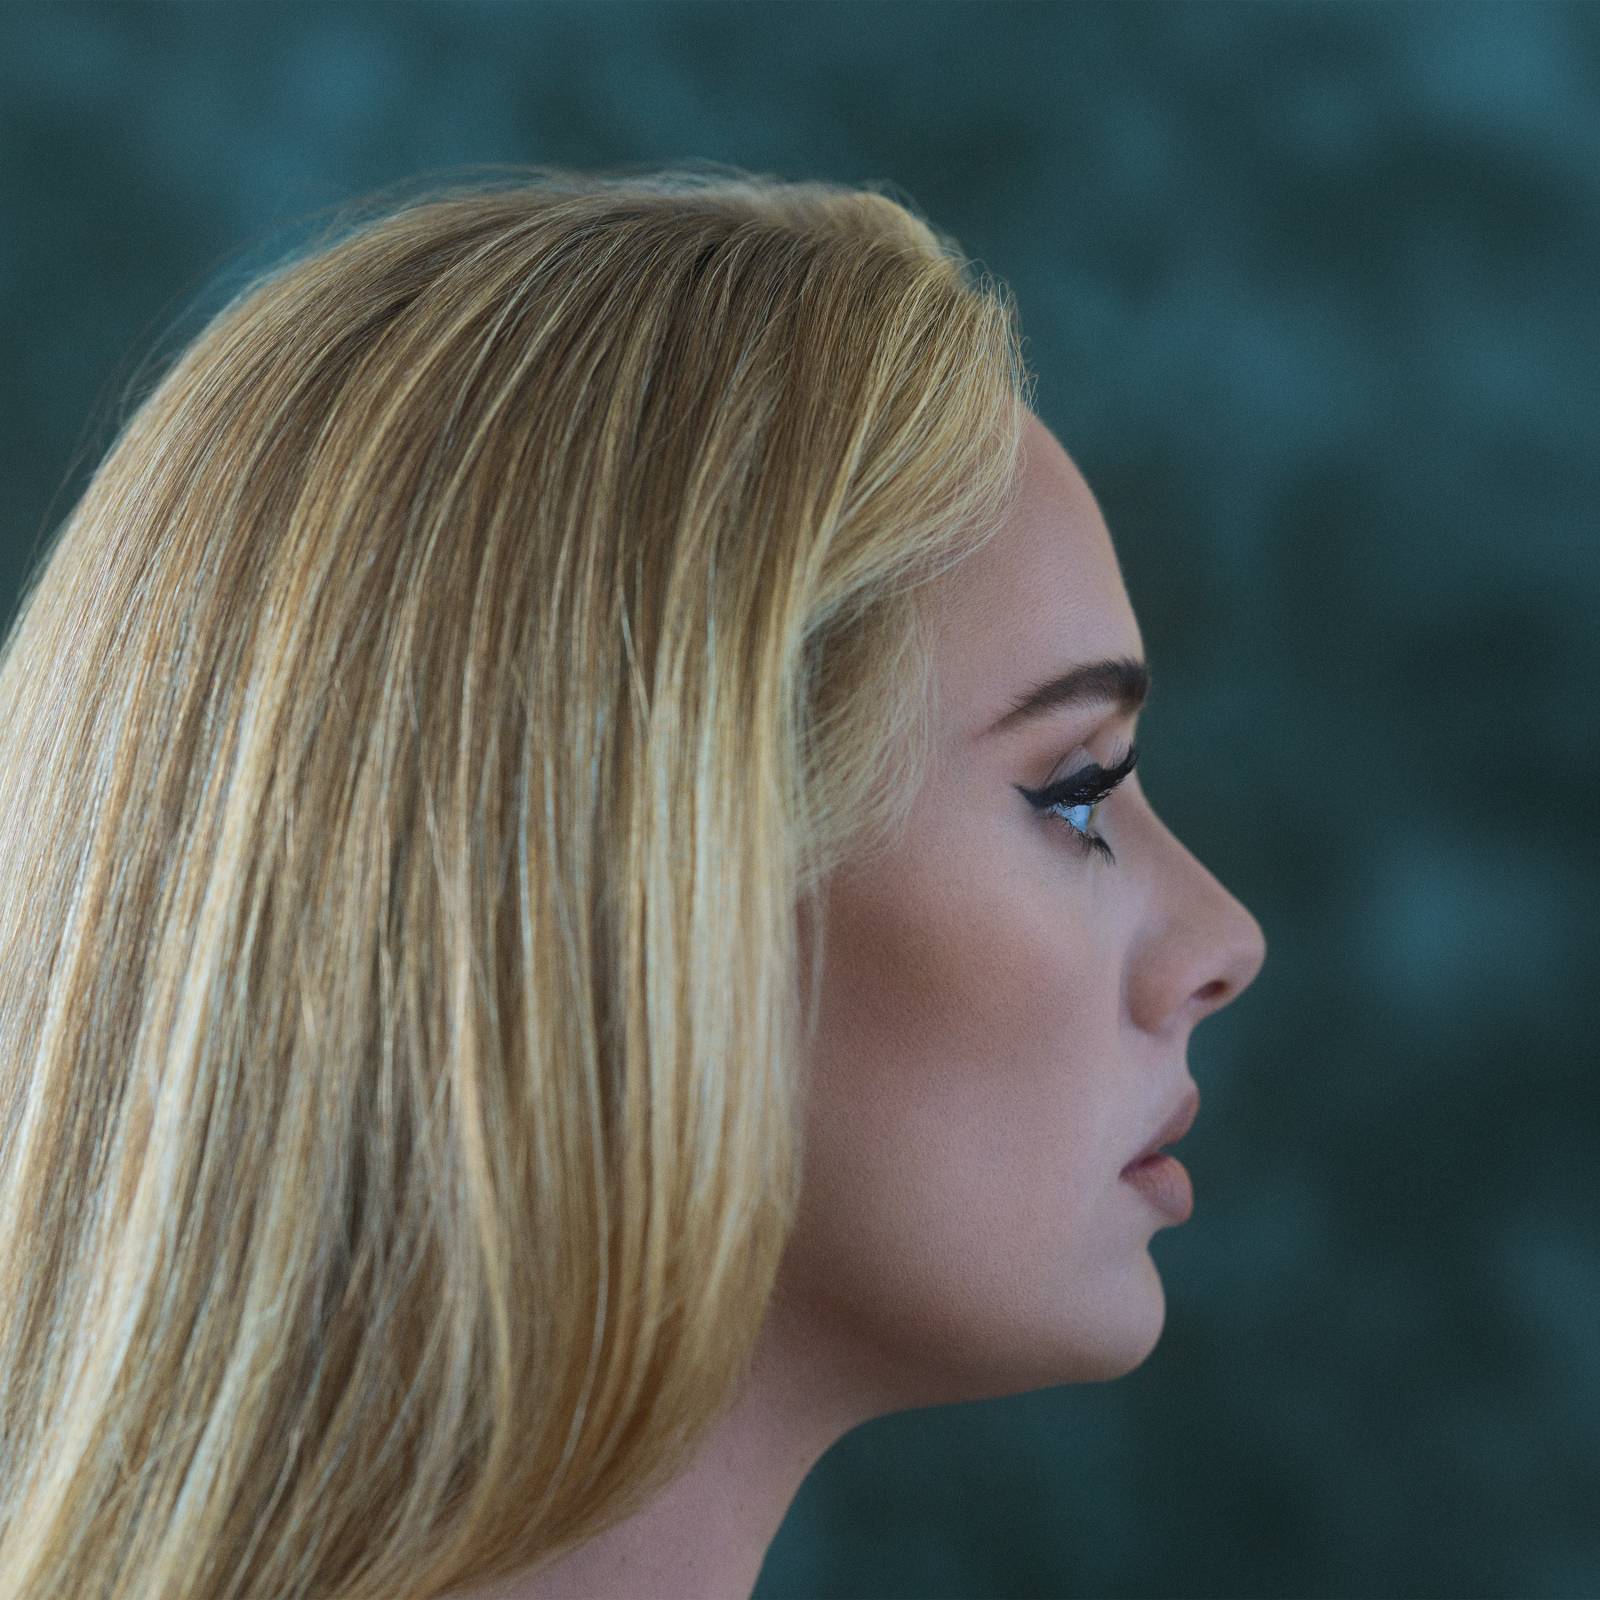 Adele láme s porozchodovým videoklipem rekordy a oznamuje nové album